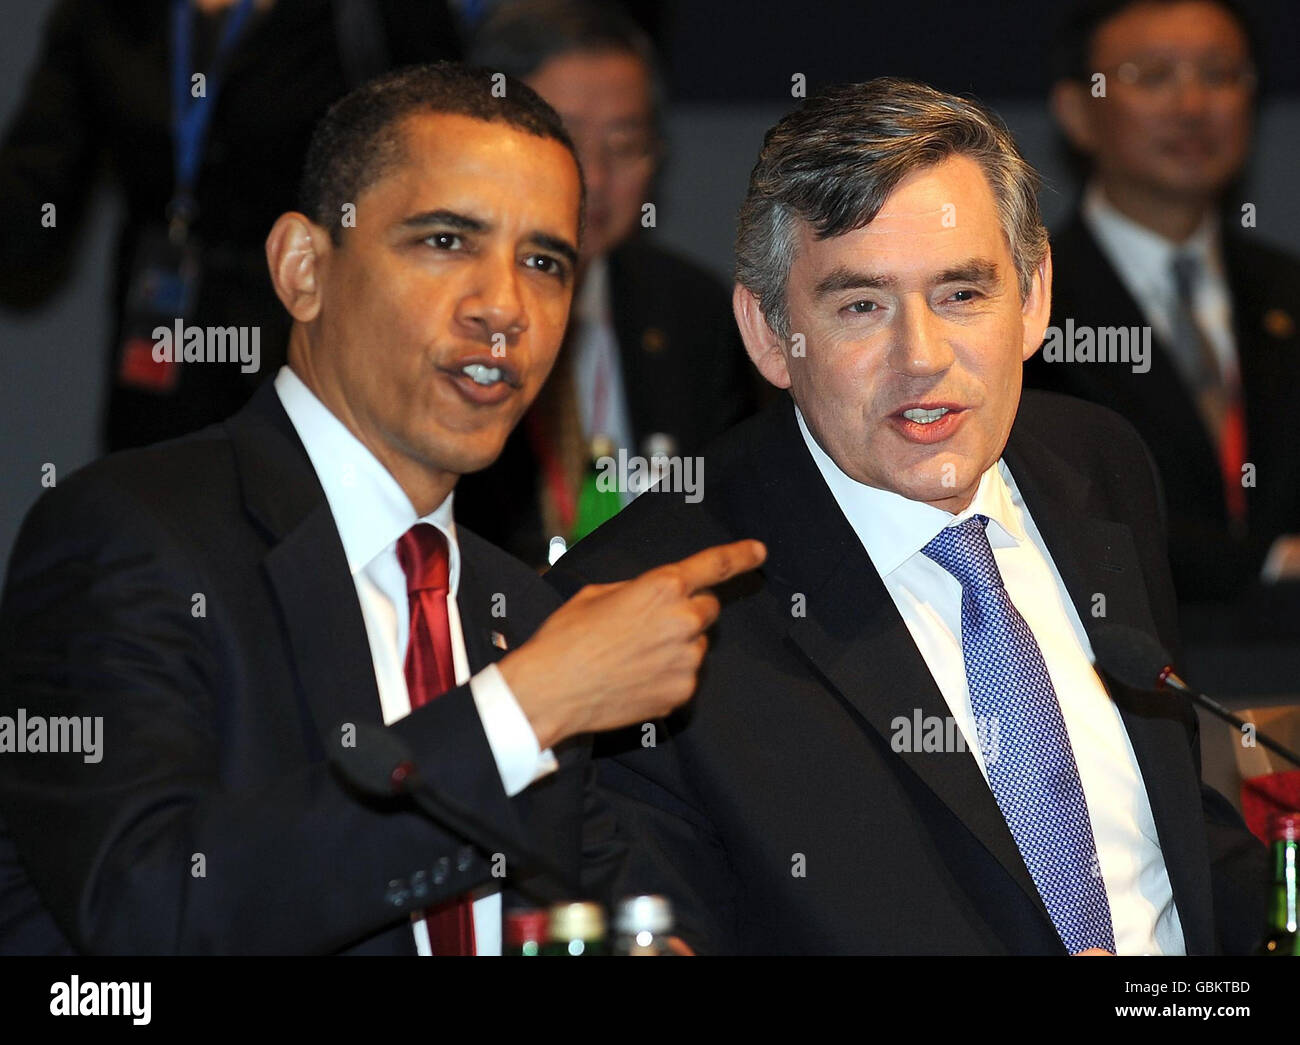 Archivbild, datiert 02/04/2009. US-Präsident Barack Obama spricht mit Großbritanniens Premierminister Gordon Brown während der Plenarsitzung beim G20-Gipfel im Excel-Zentrum in East London. ... G20-Gipfel Tag zwei ... 02-04-2009 ... London ... GROSSBRITANNIEN ... DRÜCKEN Sie VERBANDSFOTO. Bildnachweis sollte lauten: Anthony Devlin/PA Wire. Eindeutige Referenz-Nr. 7082603 ... Bild Datum: Donnerstag, 02. April 2009. Siehe PA Geschichte POLITIK G20. Bildnachweis sollte lesen: Anthony Devlin / PA Wire PRESS ASSOCIATION Foto. Während US-Präsident Barack Obama seine ersten 100 Tage im Amt beendet, war seine Leistung so Stockfoto